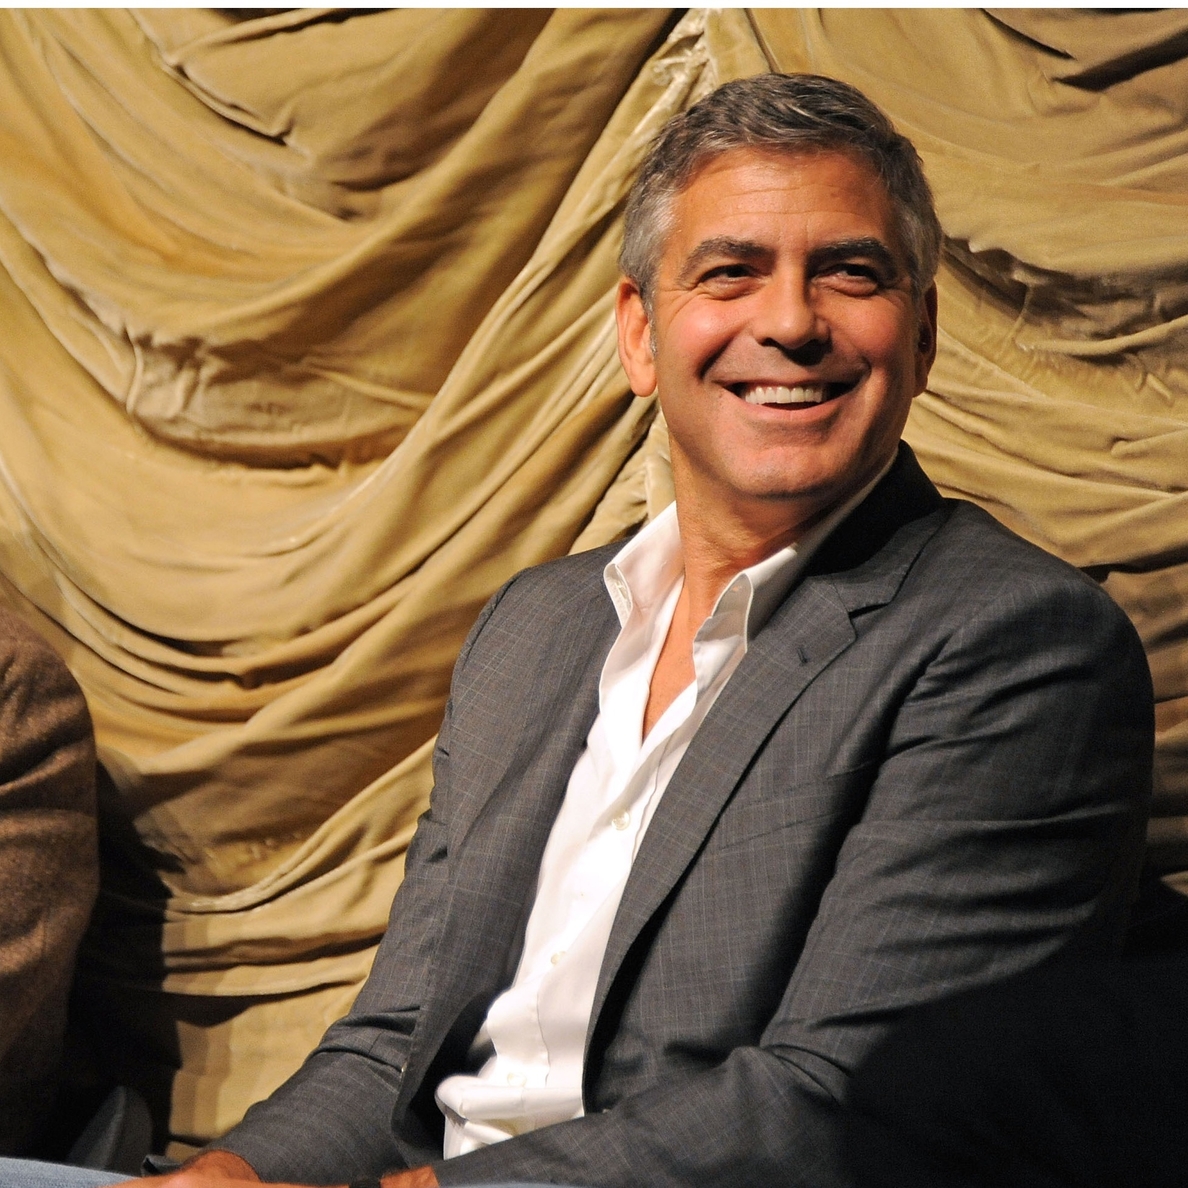 George Clooney recibirá el Globo de Oro de honor